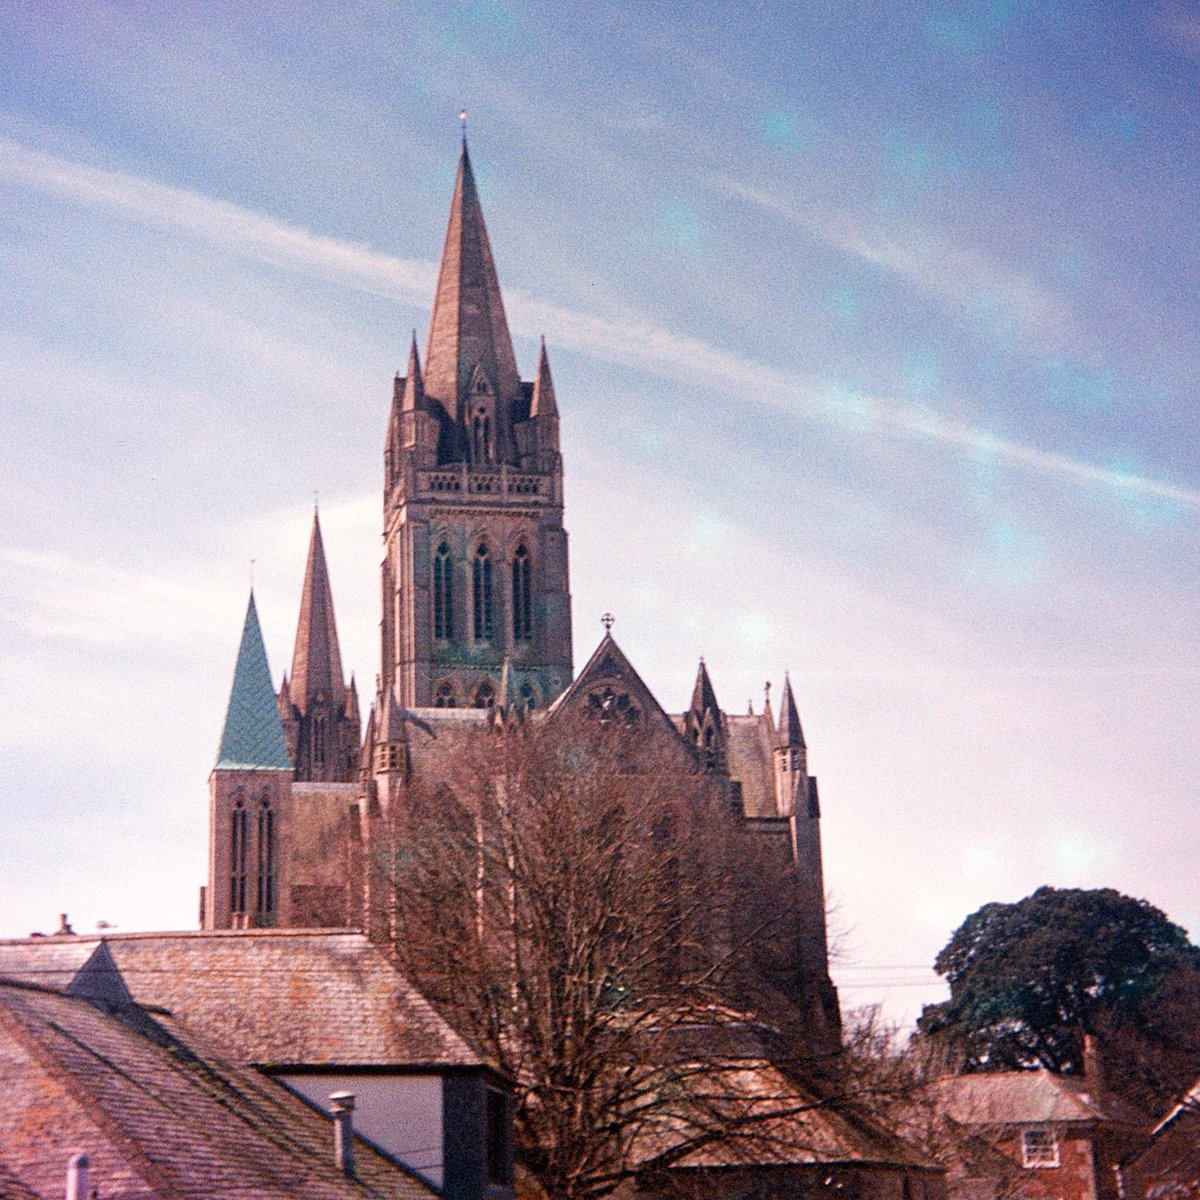 126 Creative Truro Cathedral Ilford Ilfomatic Camera, Truprint 126 cartridge film. #filmphotography #126Film #truro #Cornwall